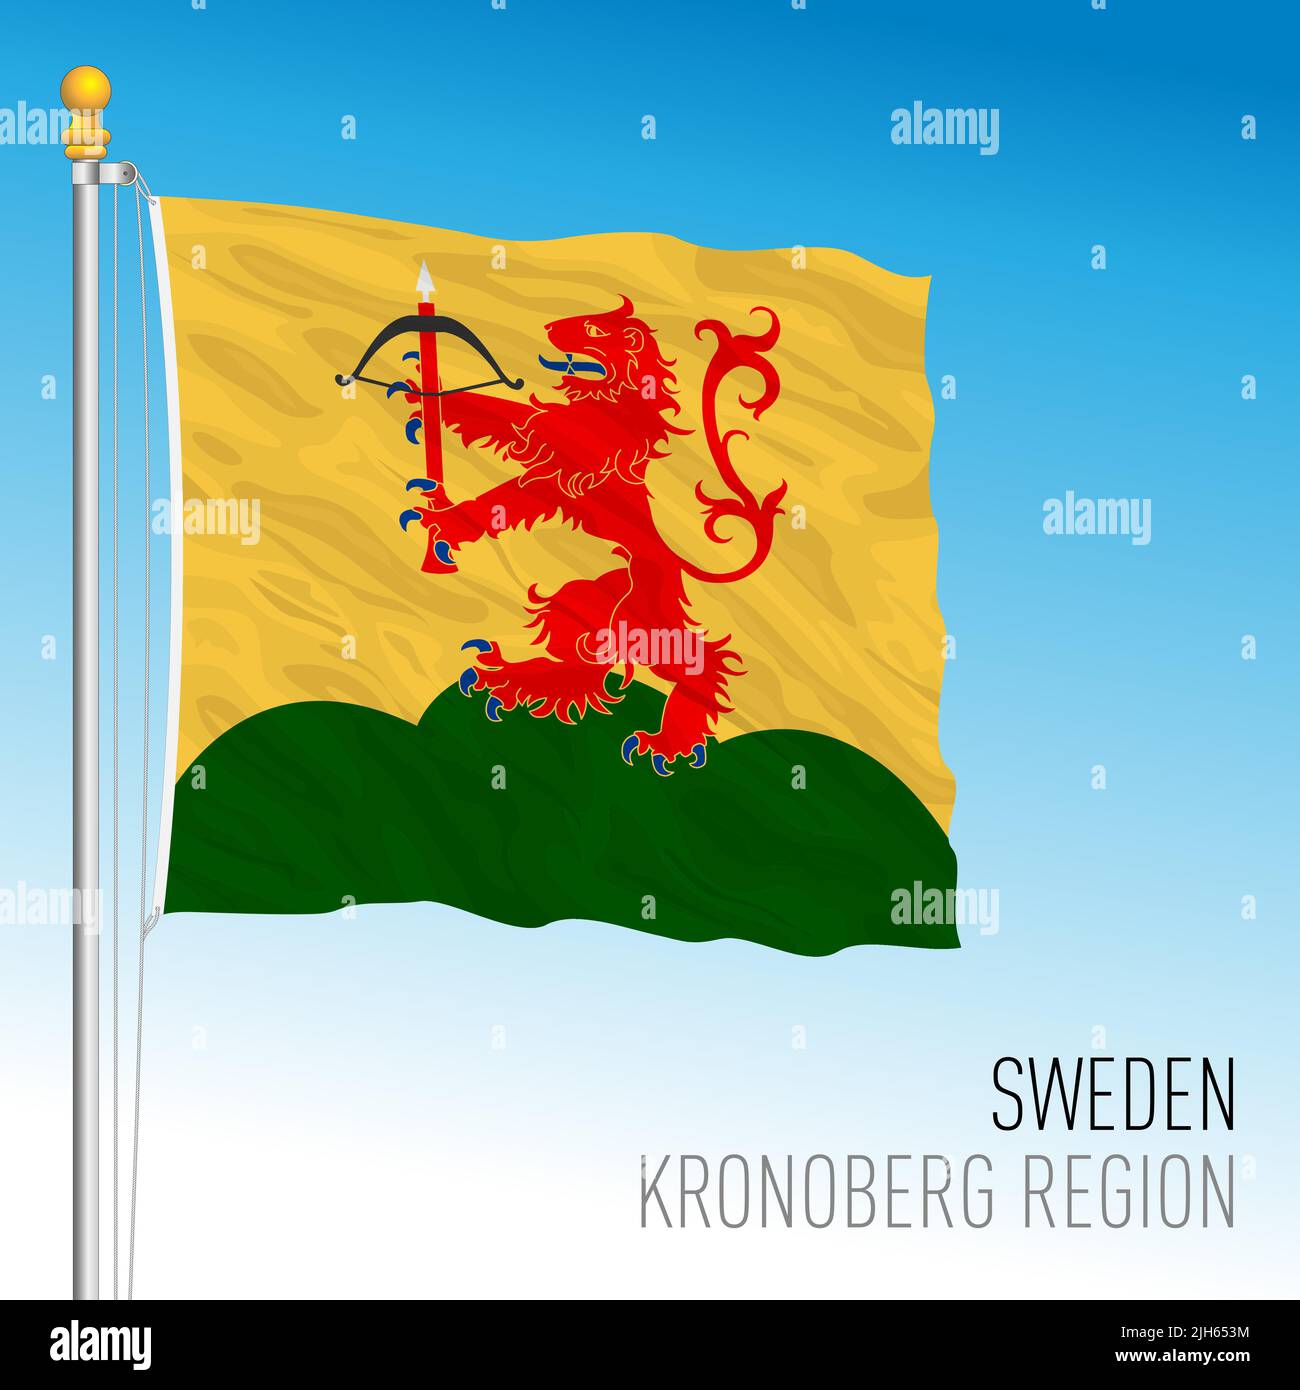 Bandera regional de Kronoberg, Reino de Suecia, ilustración de vectores Ilustración del Vector